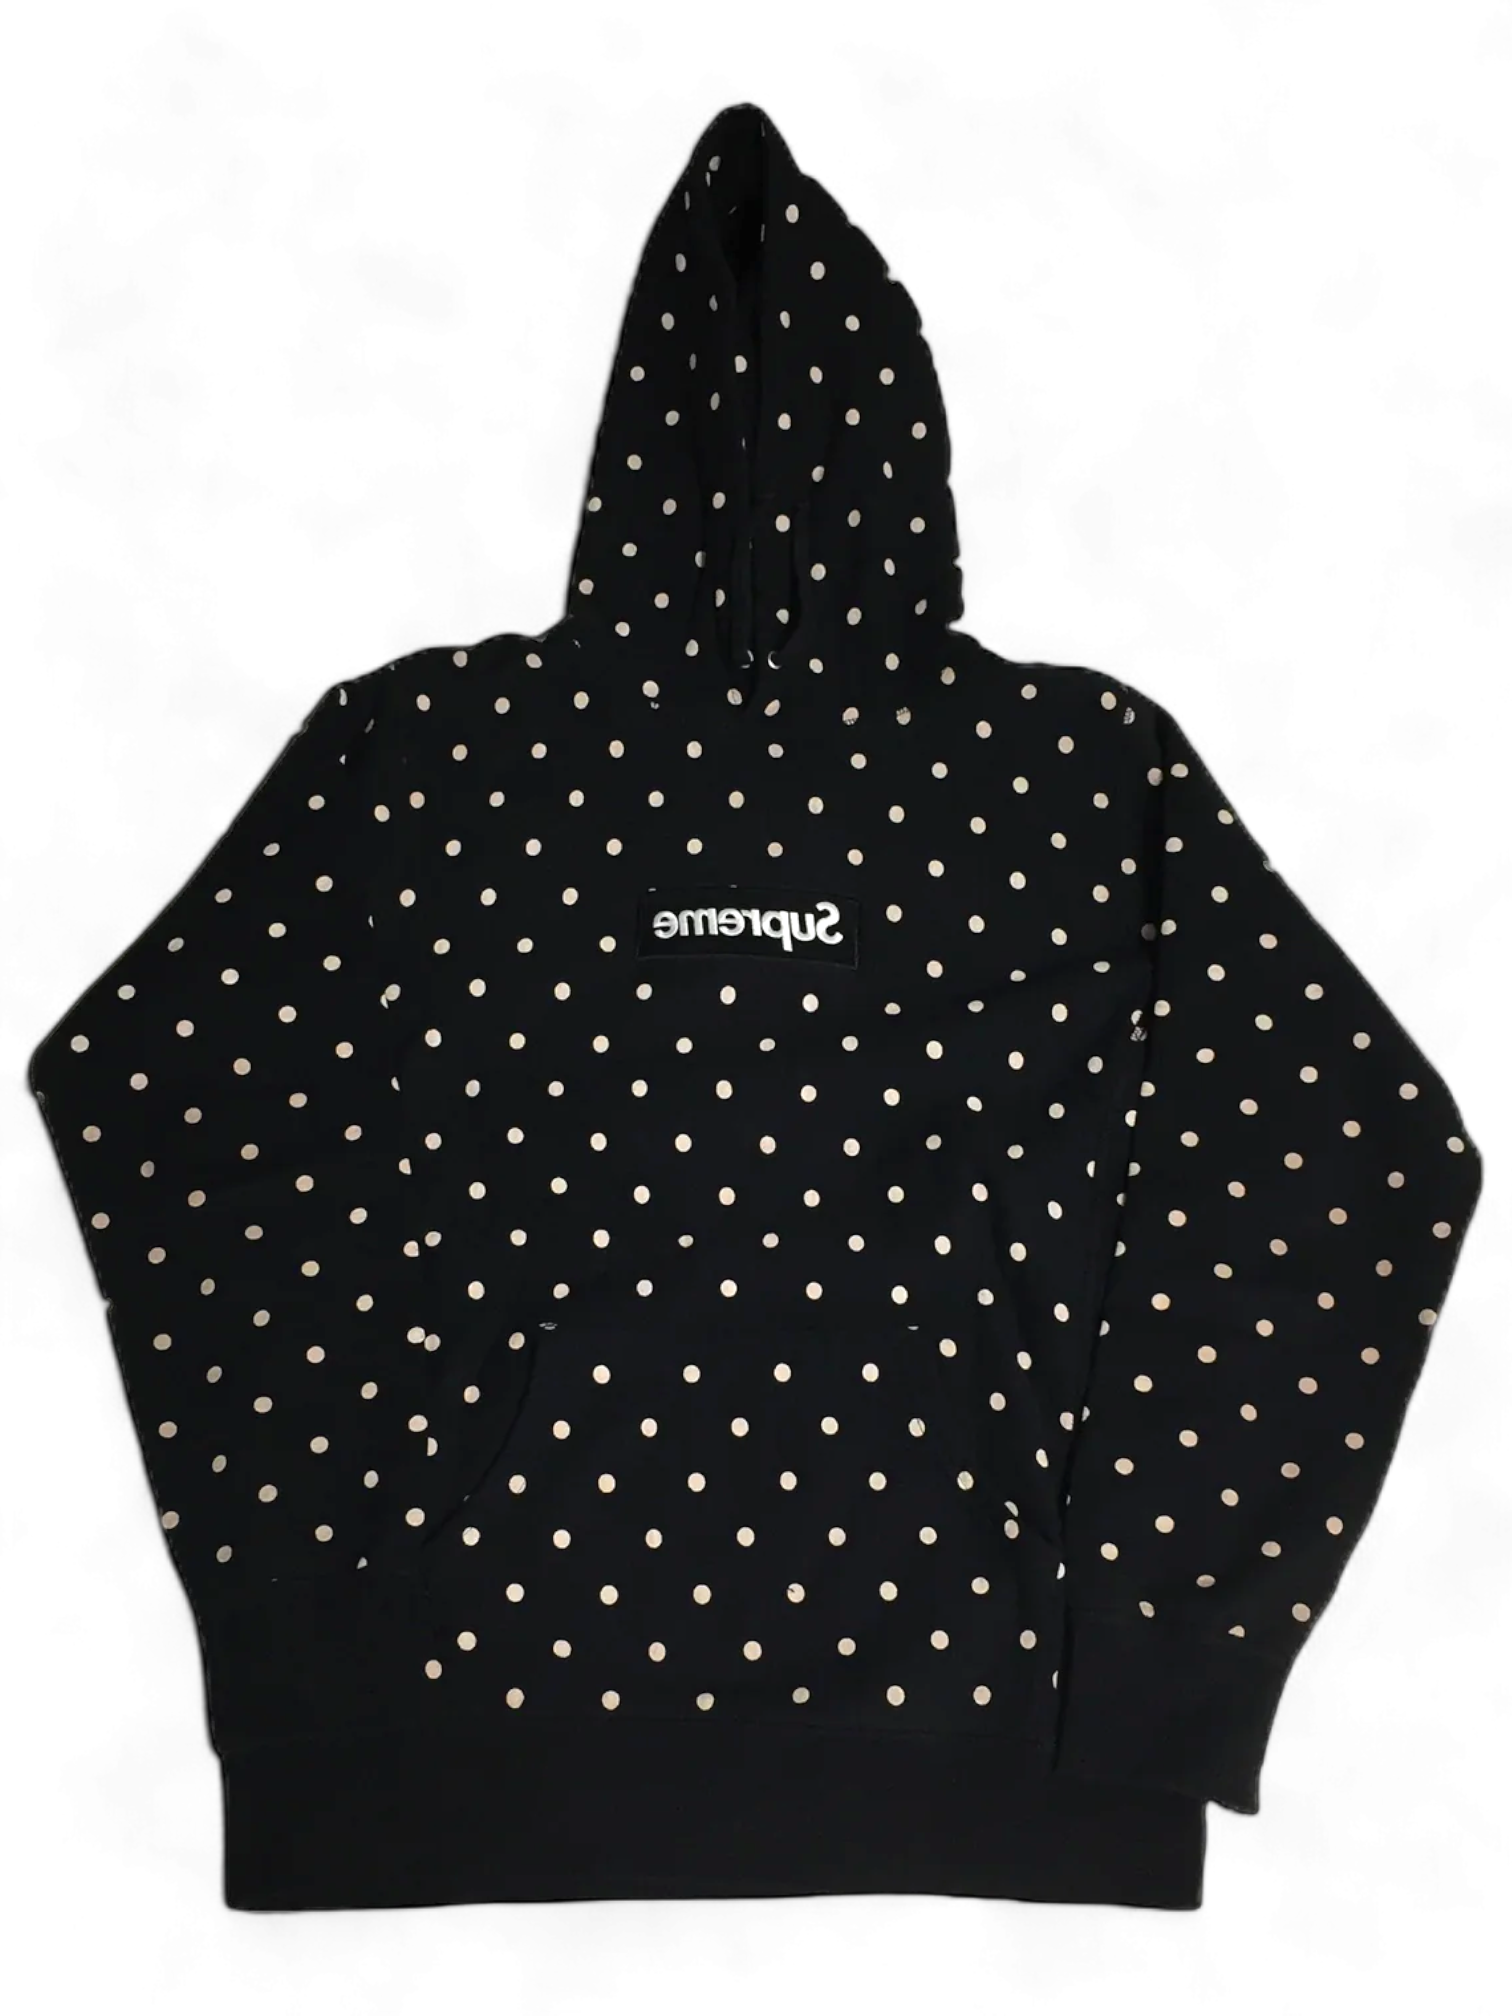 2012 Supreme x CDG Polka Dot Black Box Logo Hoodie